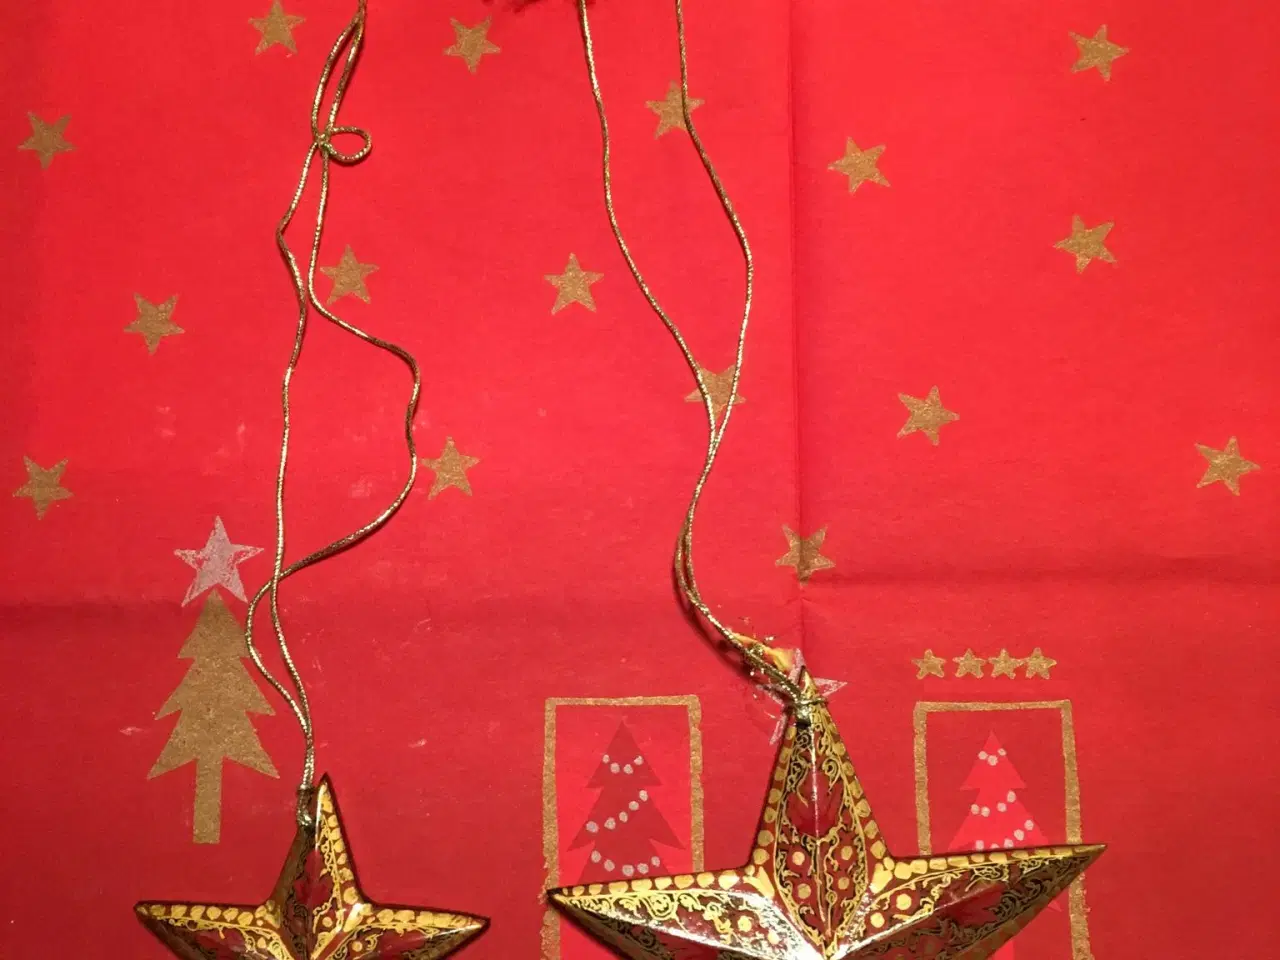 Billede 2 - Jule stjerner i papmache